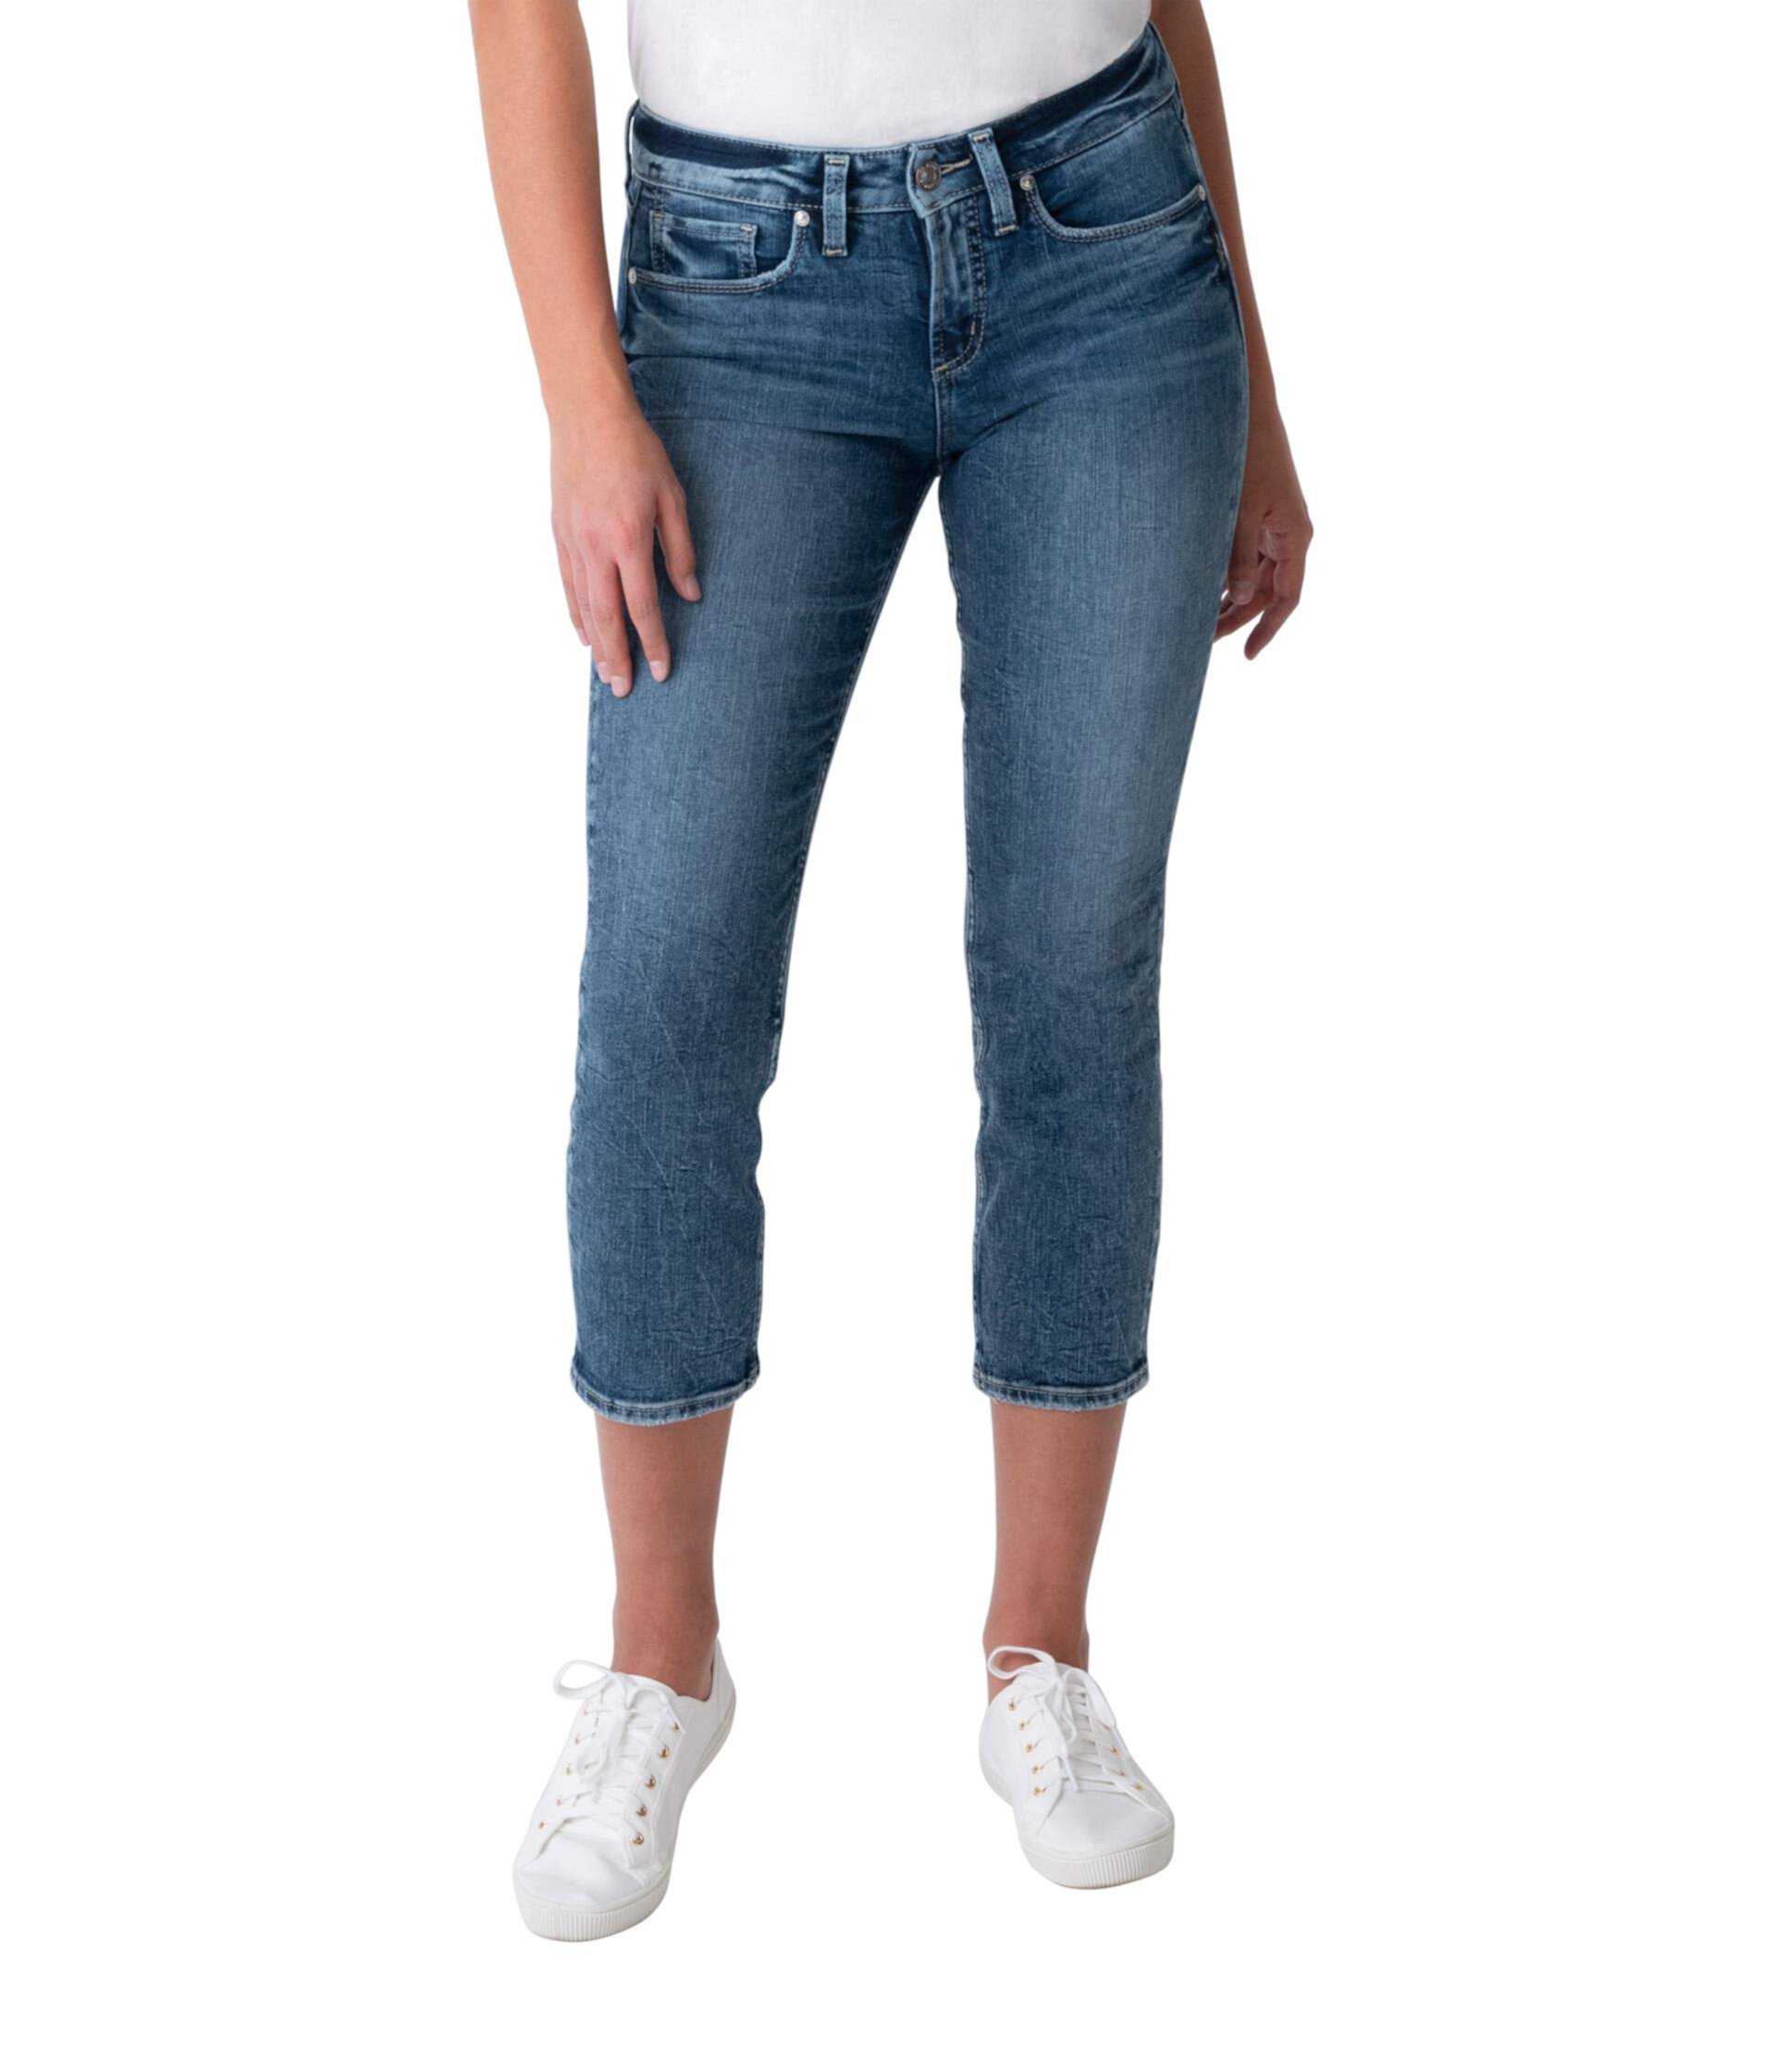 Прямые укороченные джинсы Power Stretch со средней посадкой L43980EPX331 Silver Jeans Co.